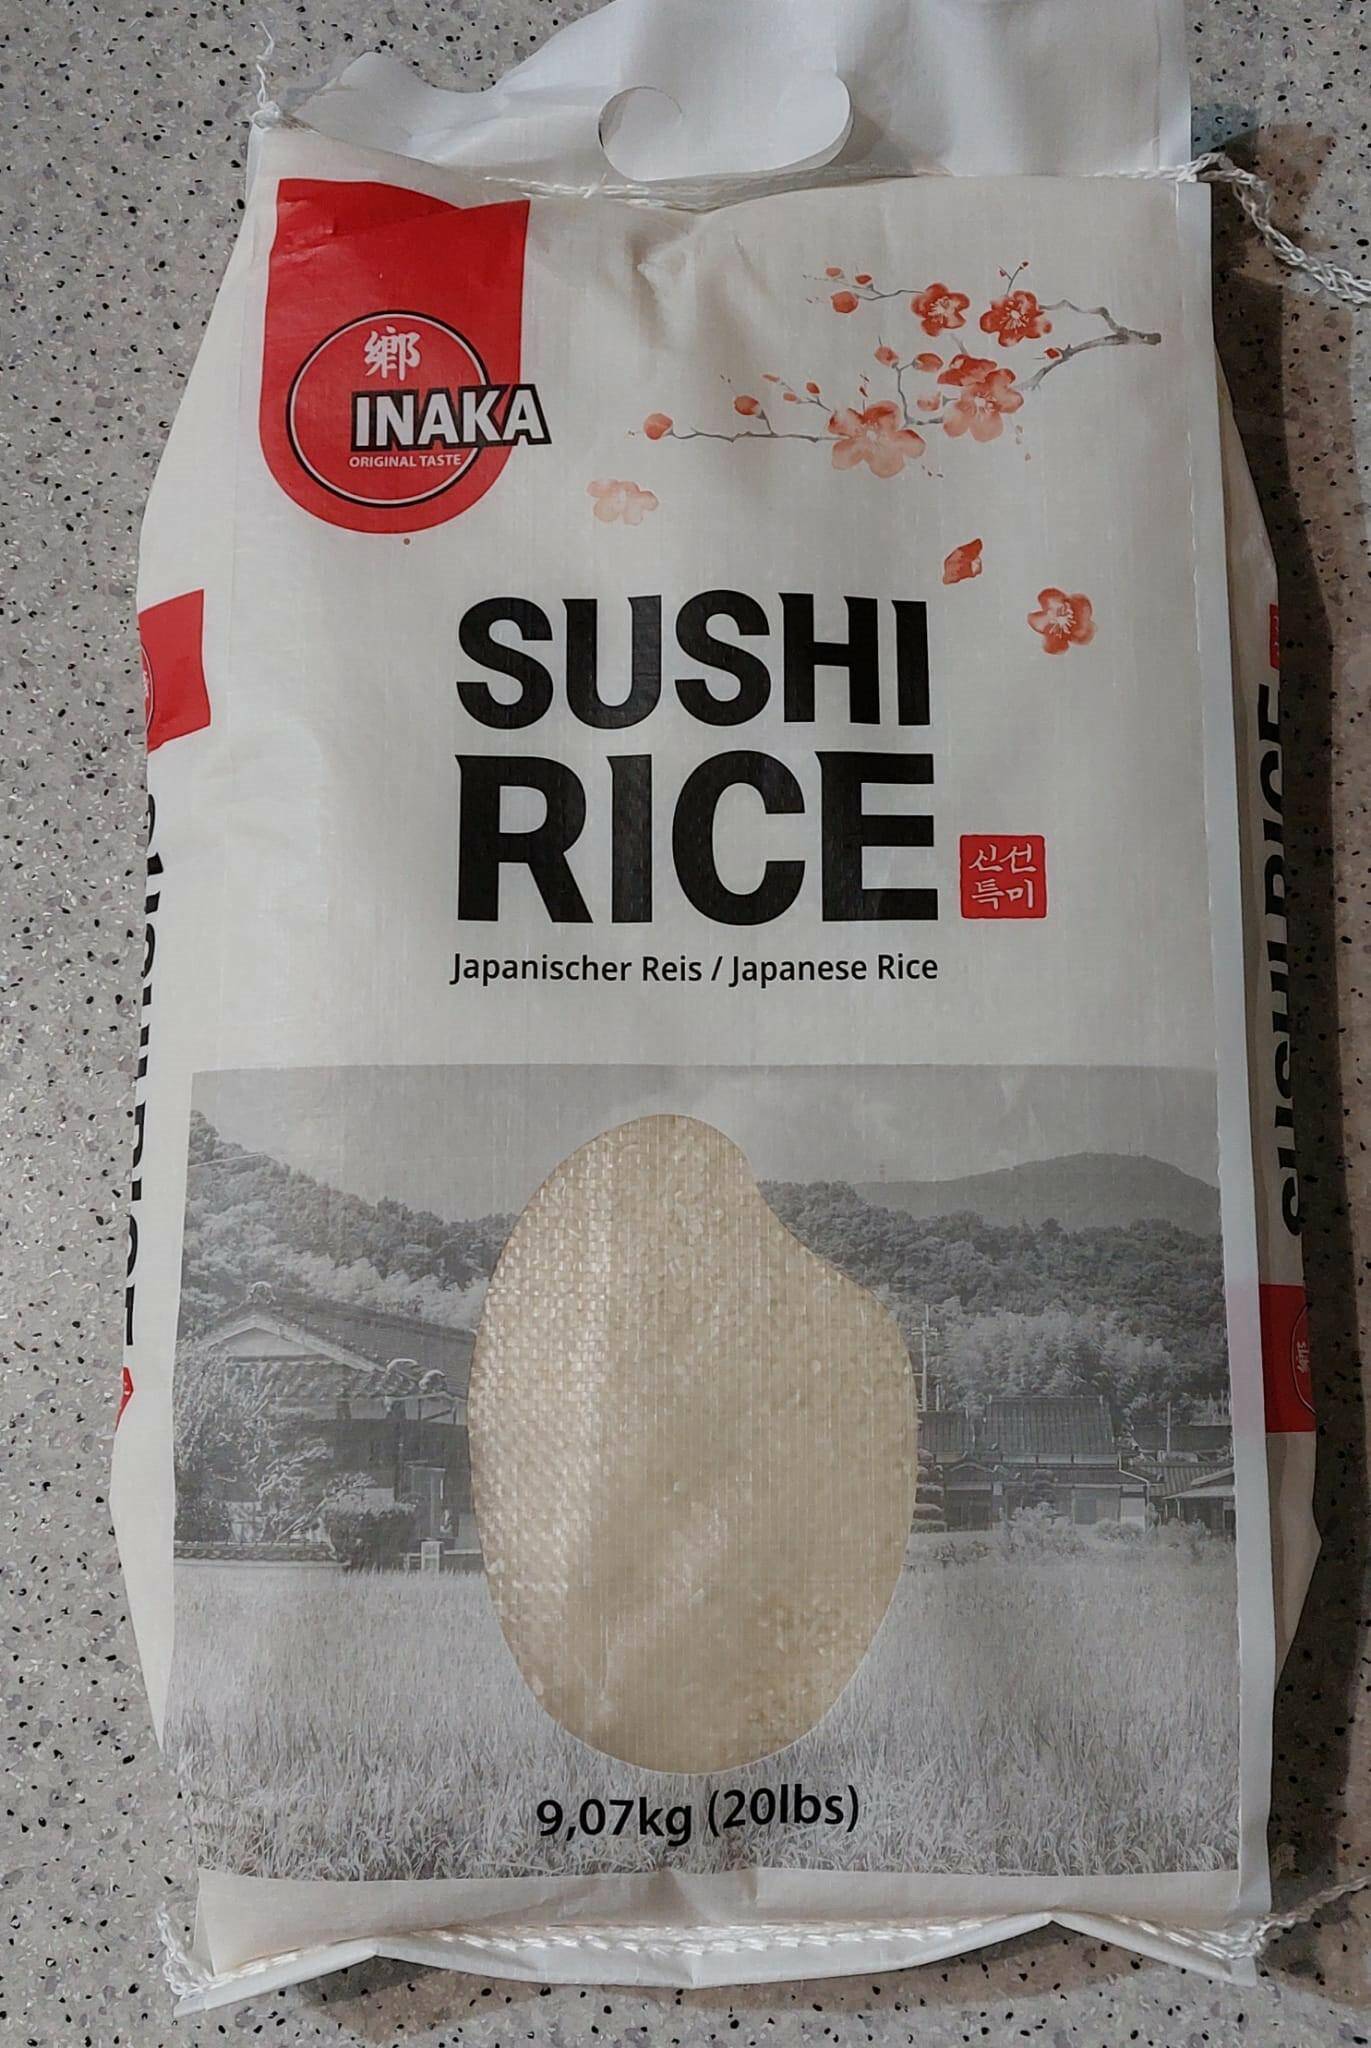 INAKA 스시 쌀 9,07kg